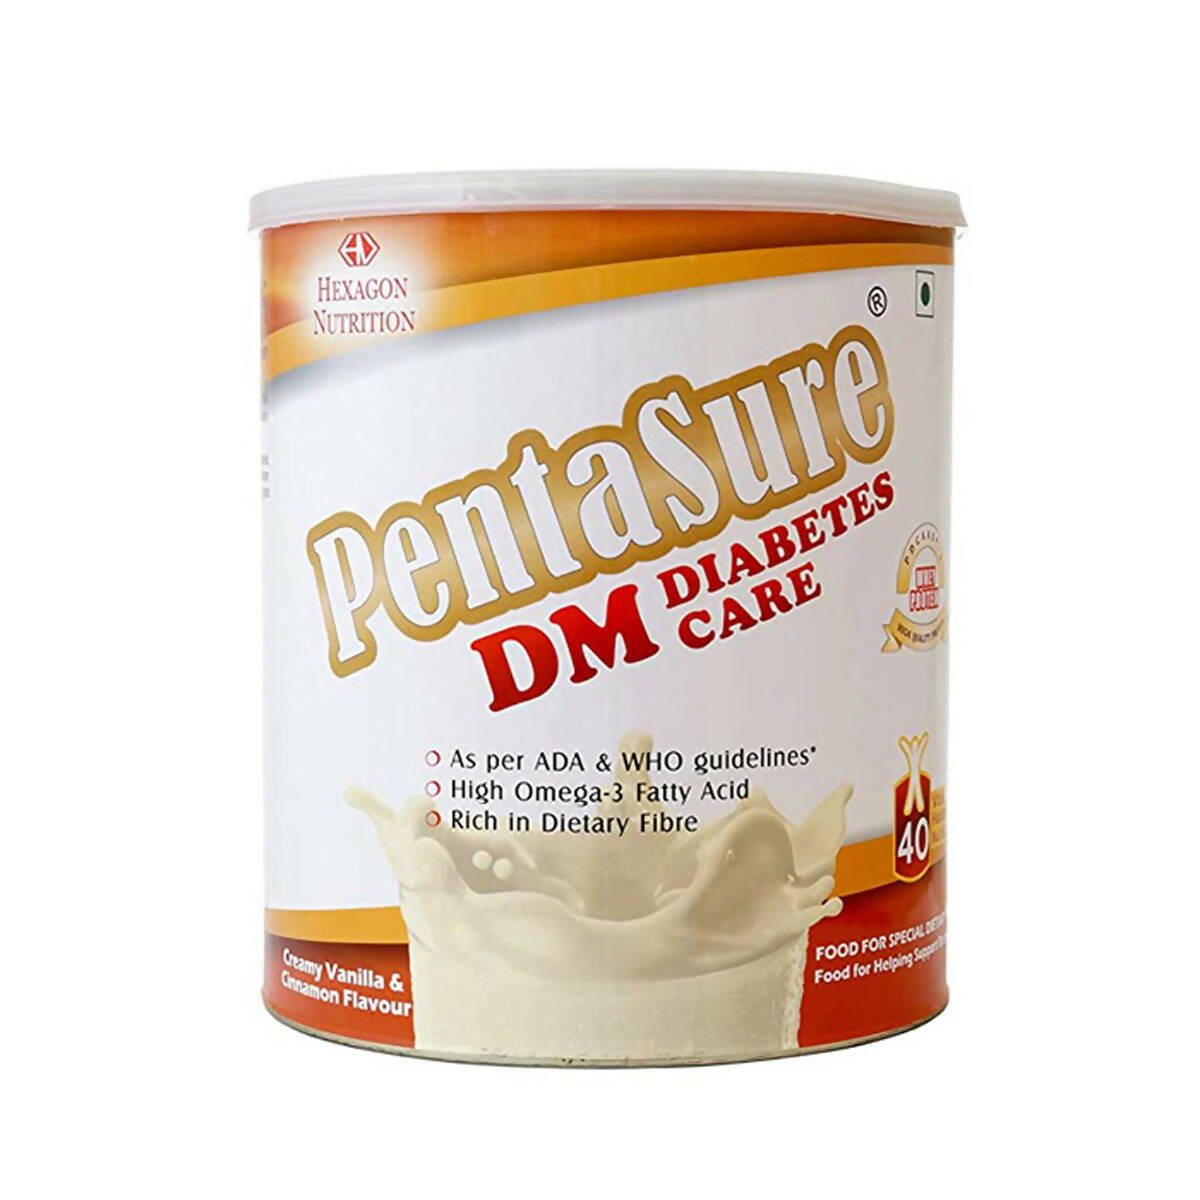 PentaSure DM Diabetes Care Powder - Creamy Vanilla & Cinnamon - Distacart